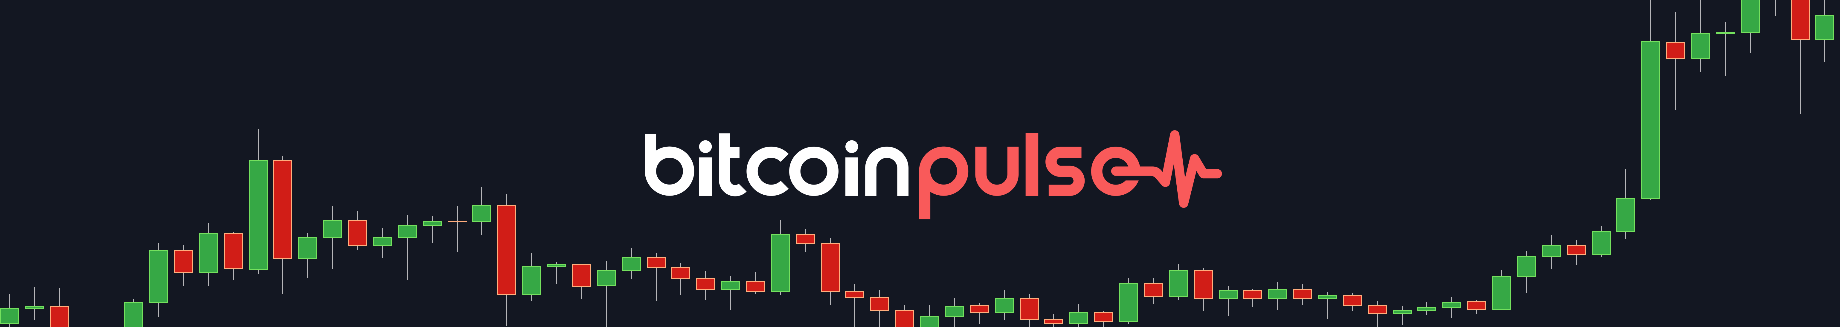 Can the Bitcoin Rally Continue? - Bitcoin Pulse #92